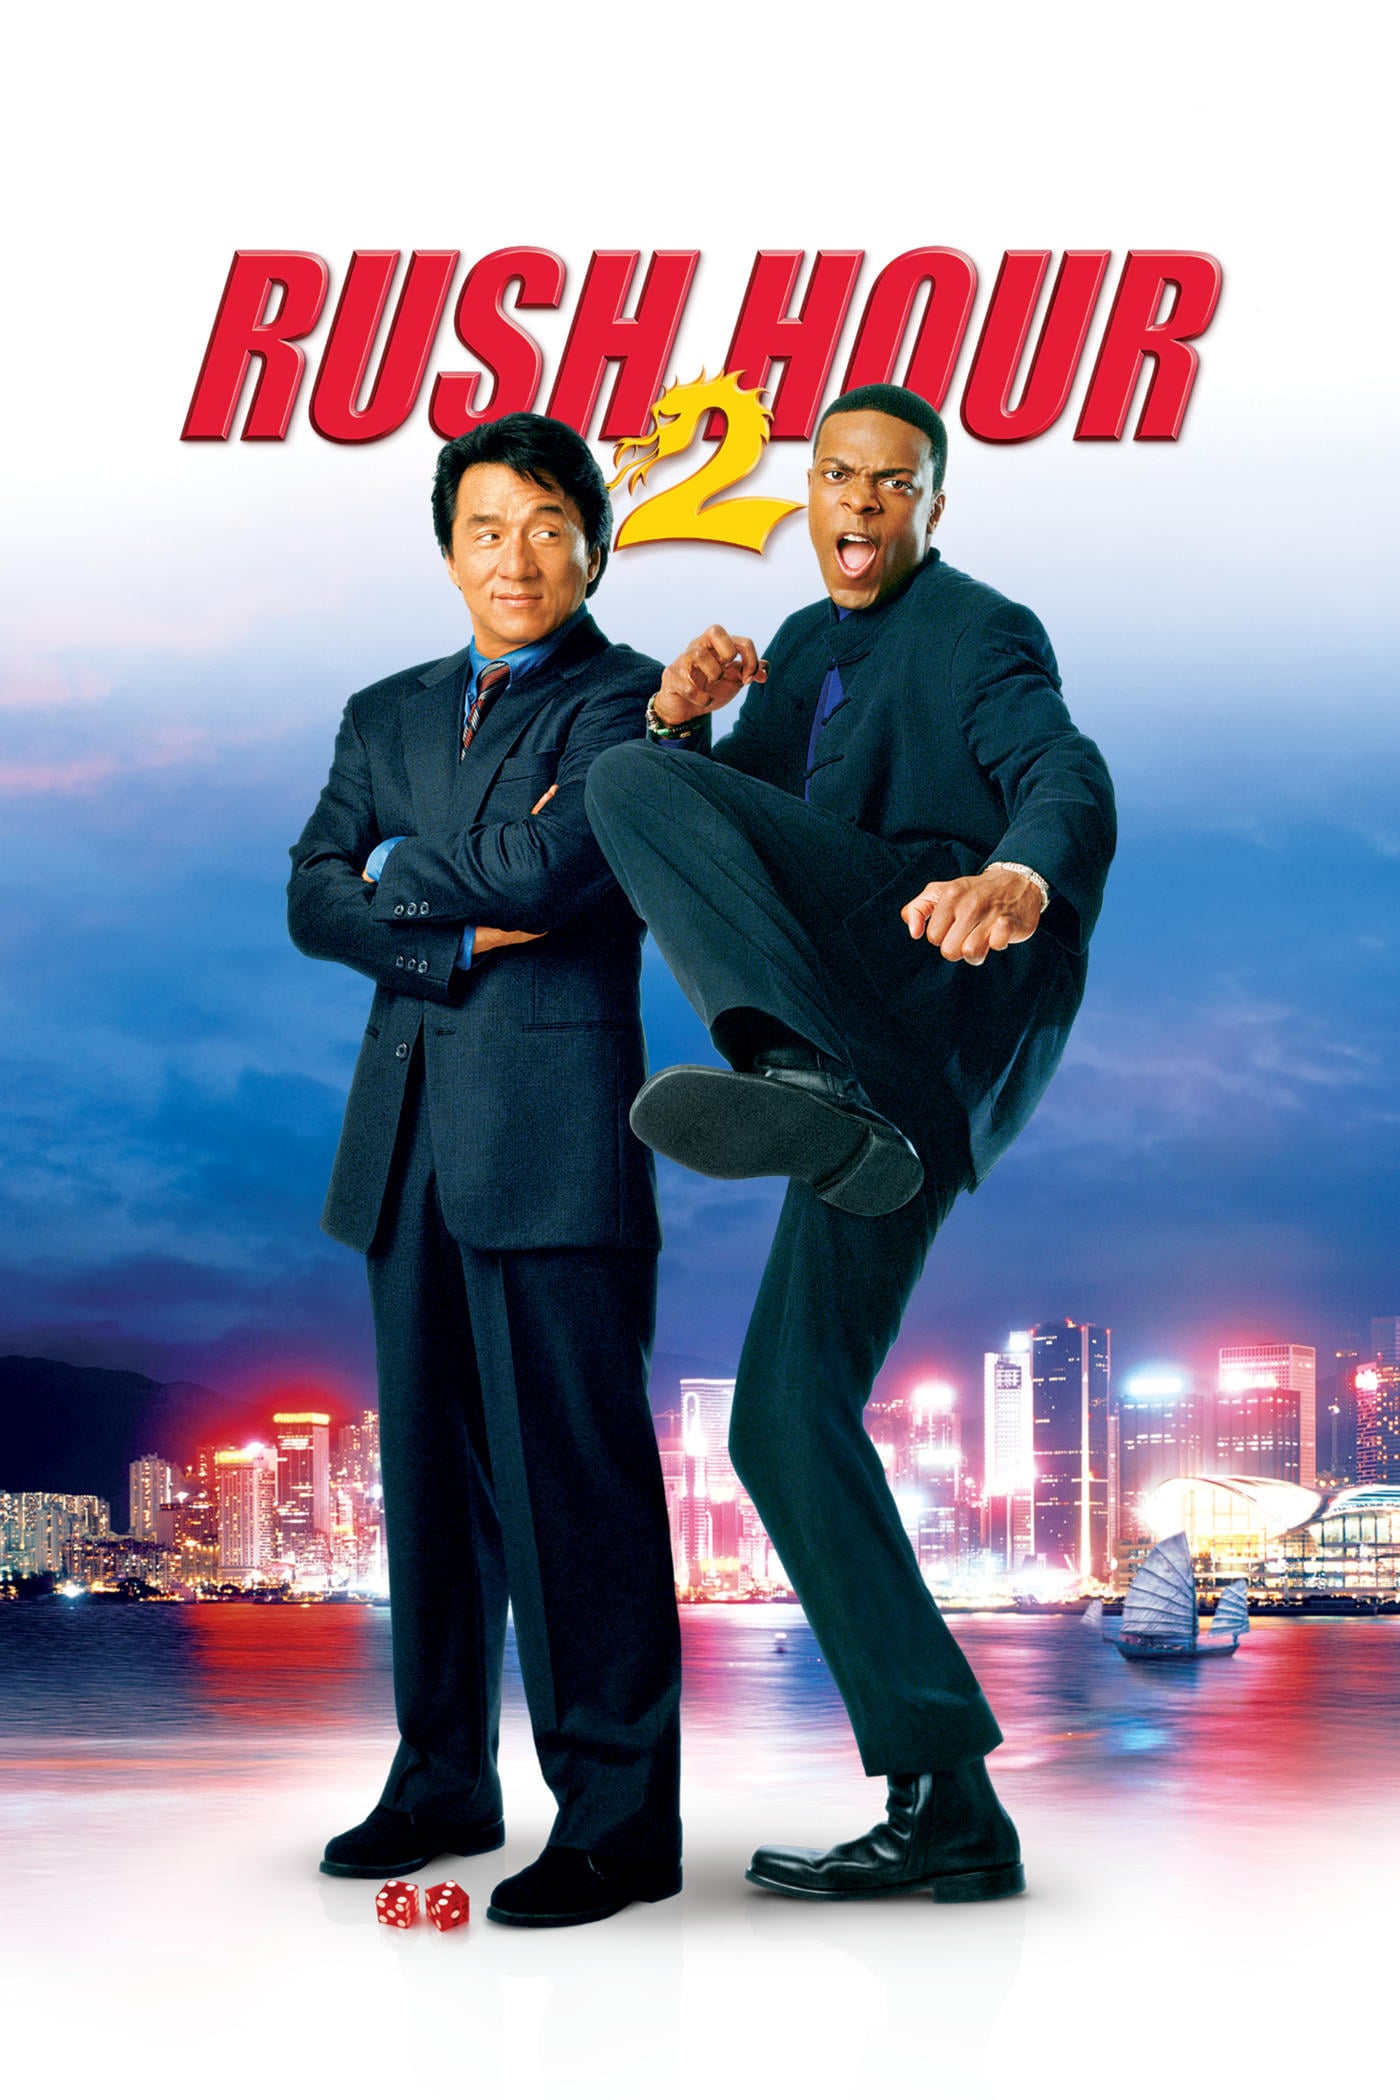 Rush Hour 2 (2001) Dual Audio Hindi-English 480p 720p Bluray